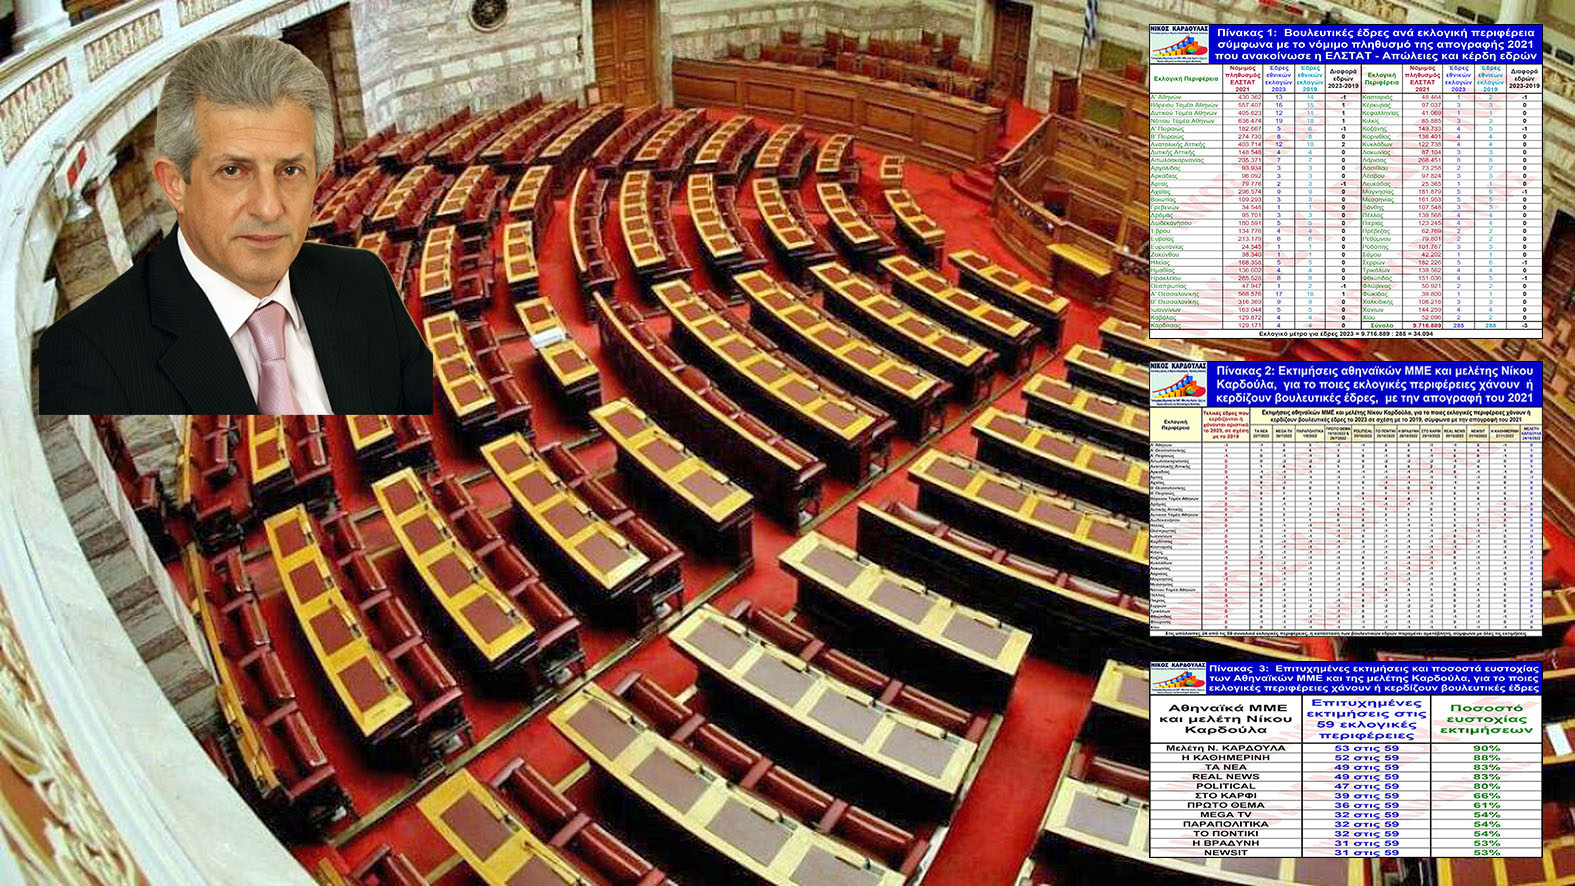 Η απόλυτη ευστοχία του Ν.Καρδούλα στην κατανομή βουλευτικών εδρών με την απογραφή του 2021!